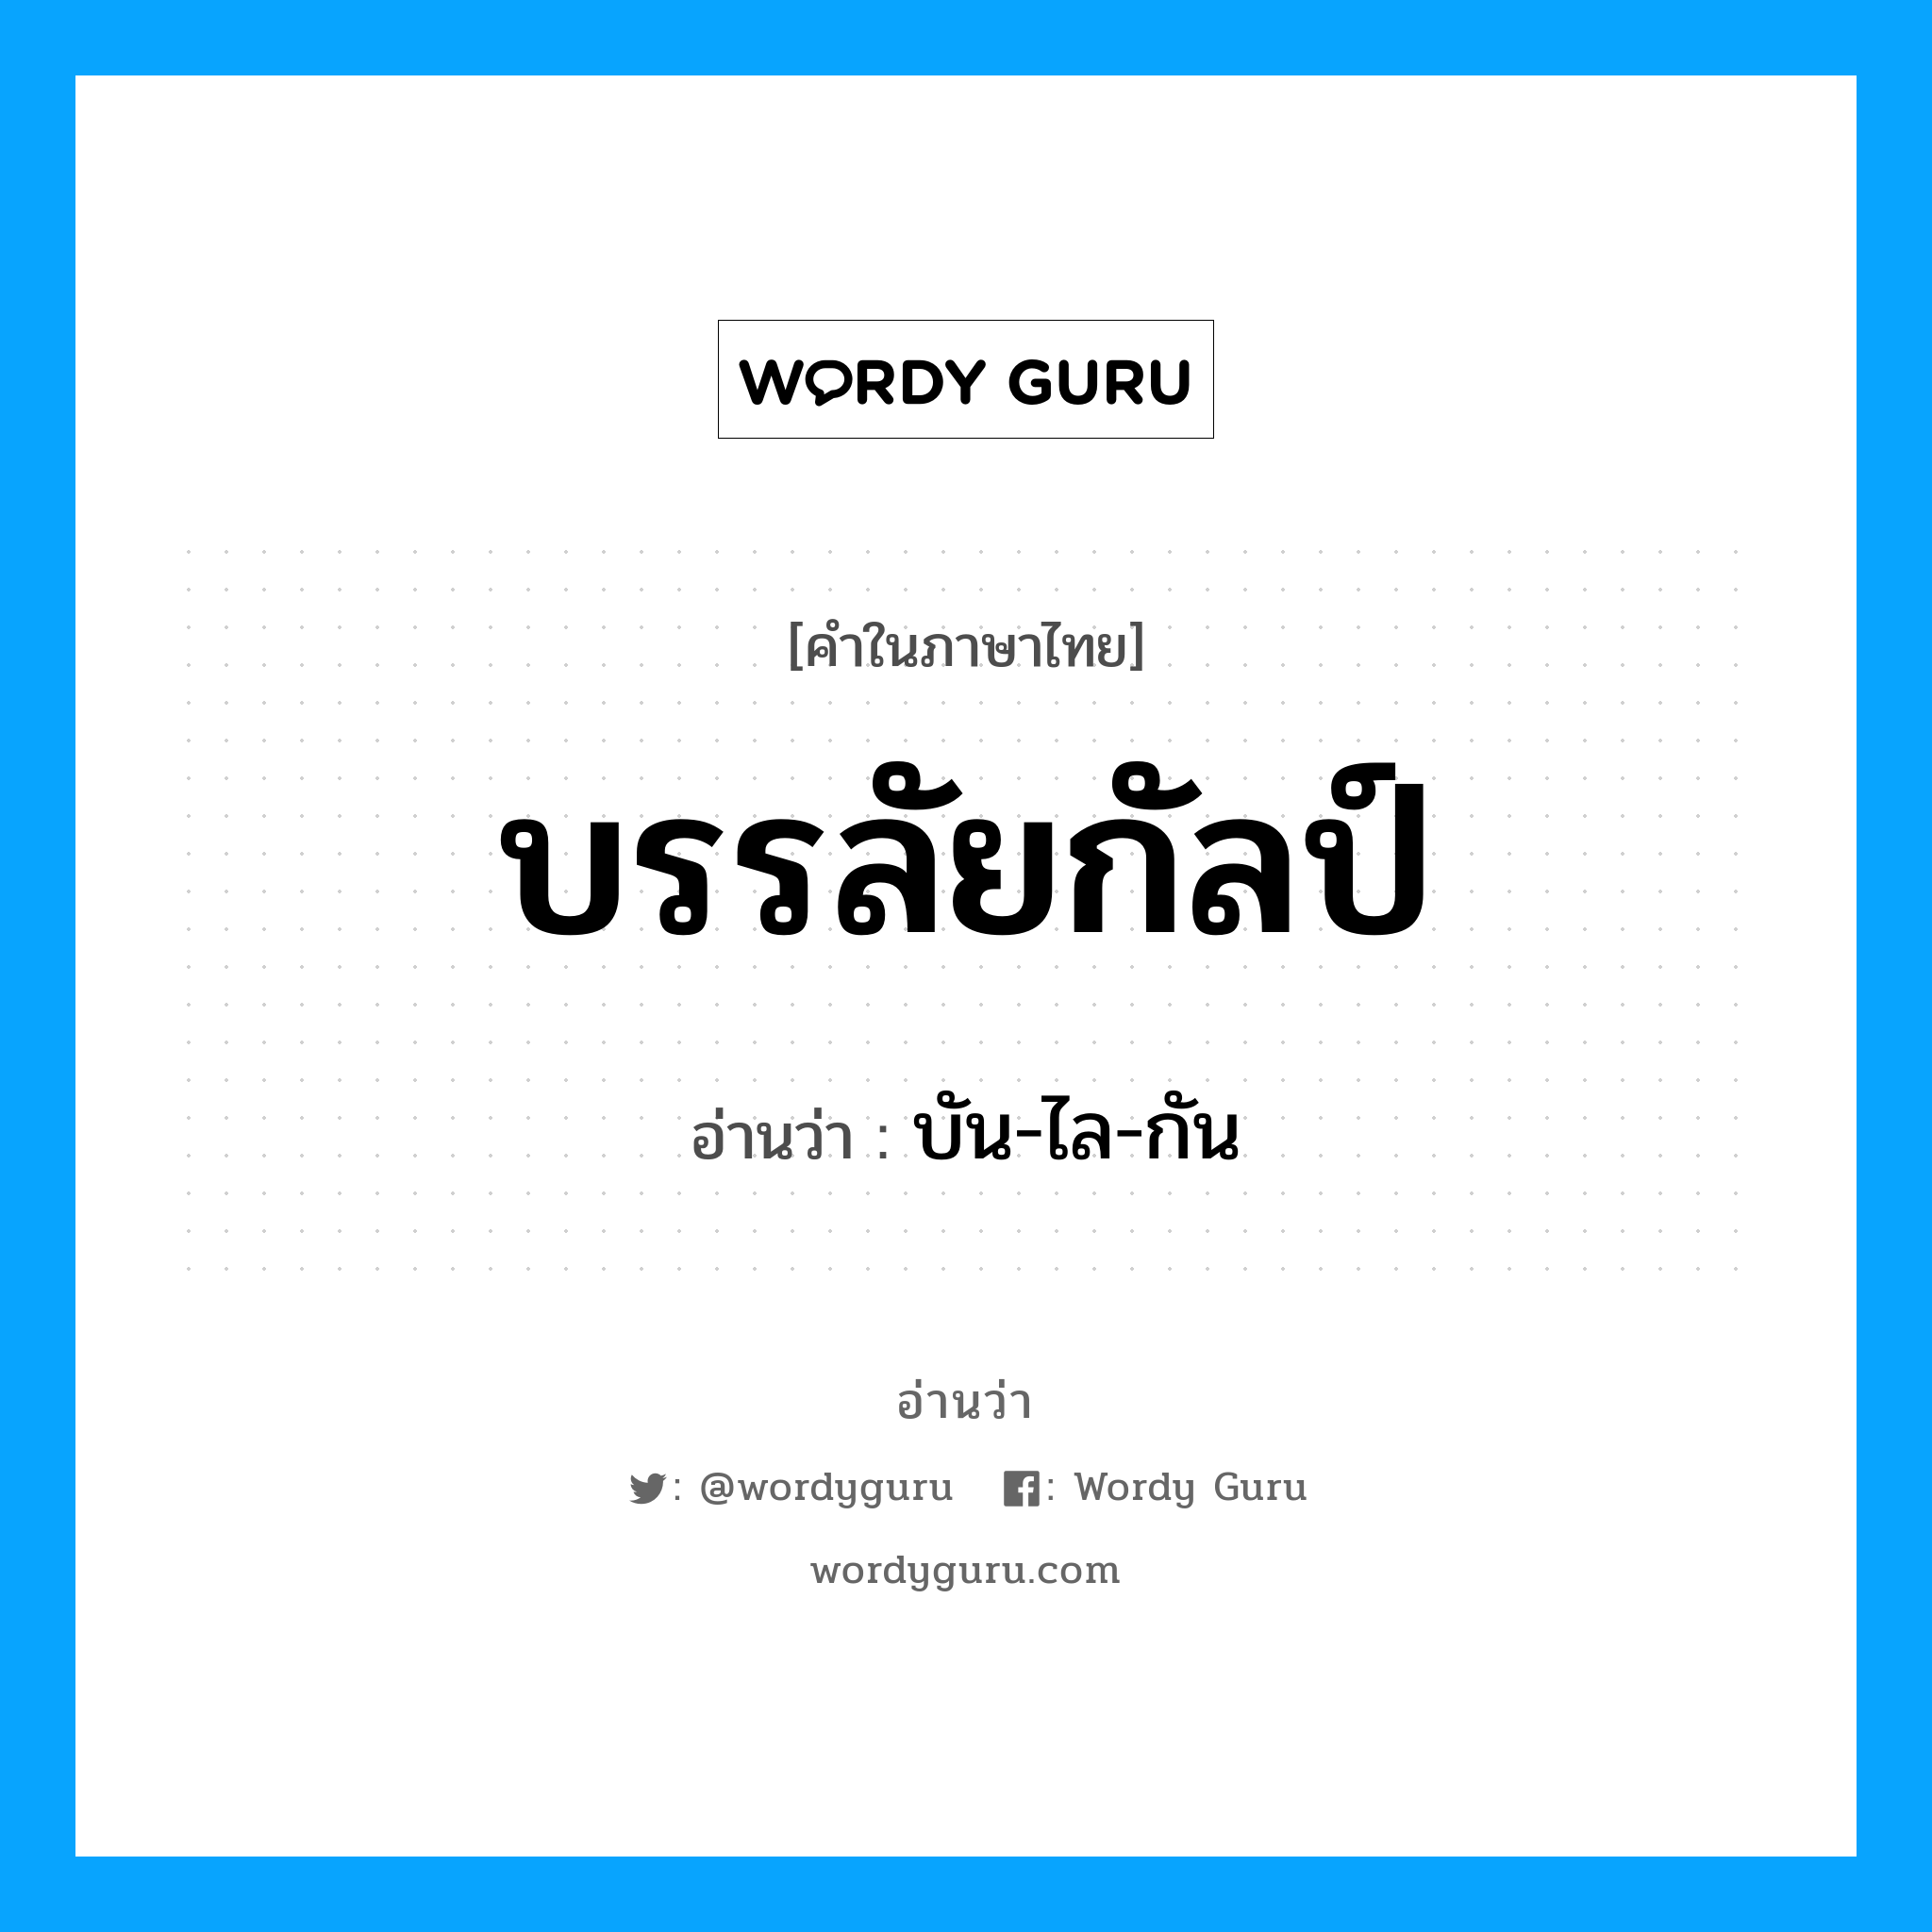 บัน-ไล-กัน เป็นคำอ่านของคำไหน?, คำในภาษาไทย บัน-ไล-กัน อ่านว่า บรรลัยกัลป์